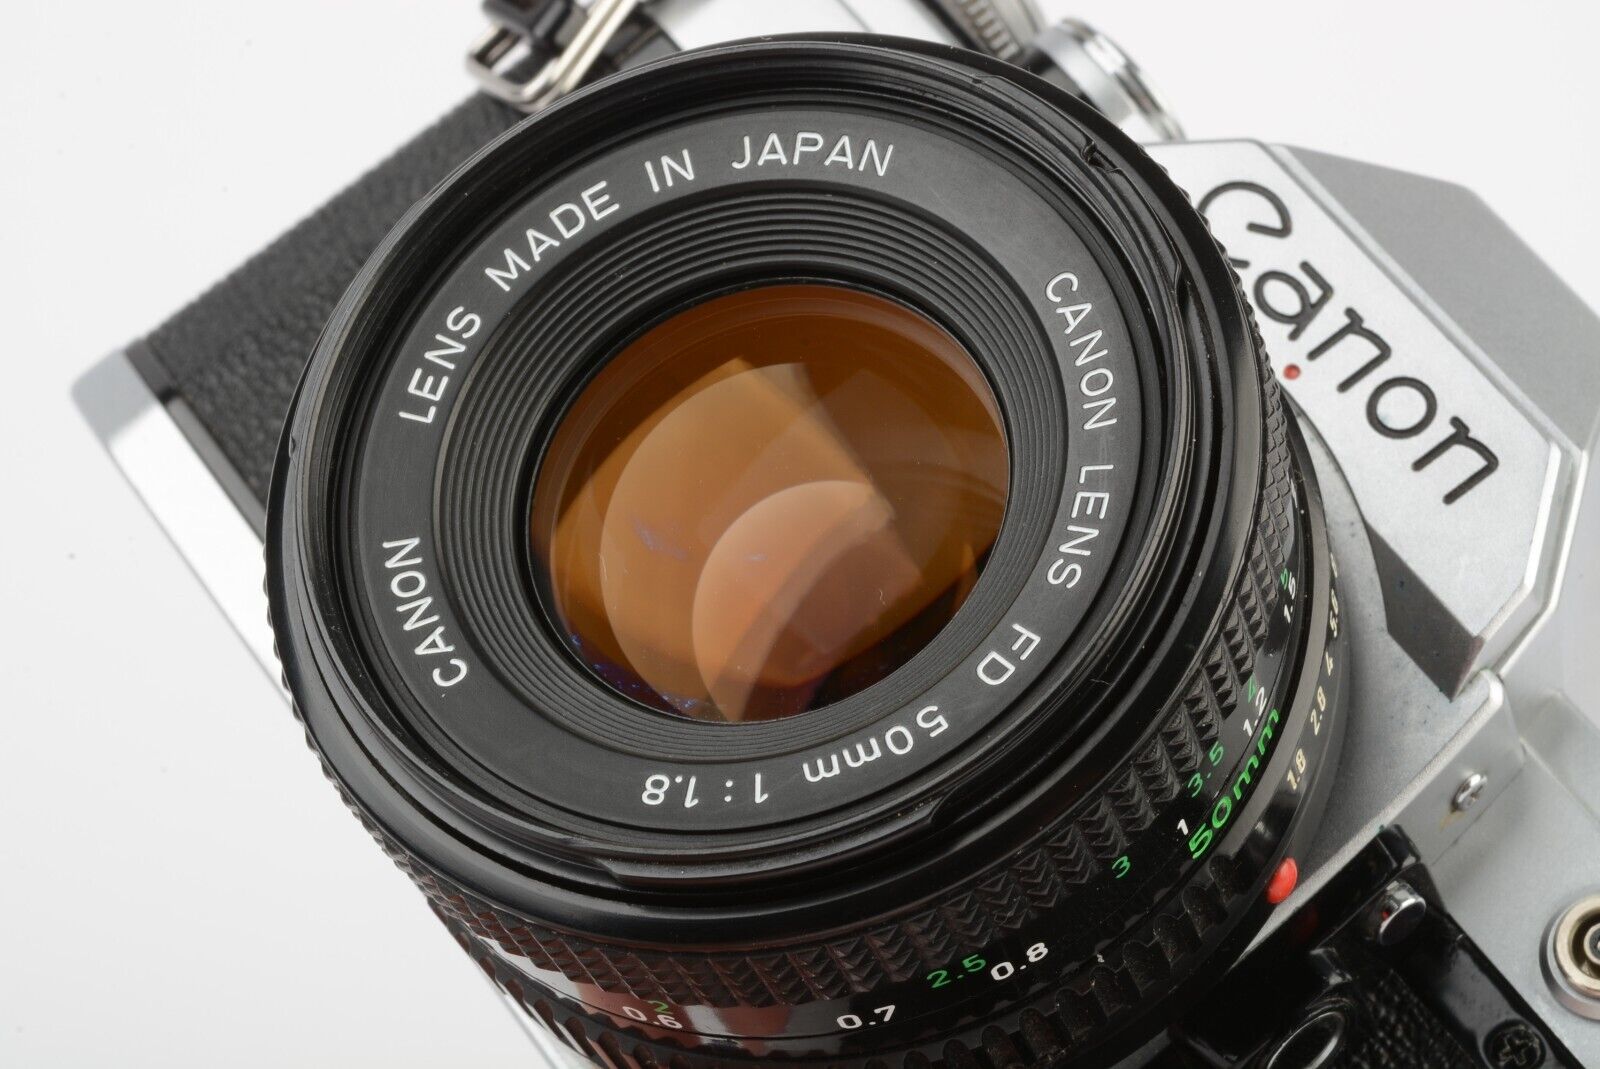 Canon AE-1 35mm SLR w/50mm F1.8 lens, new seals, book, strap, CLA